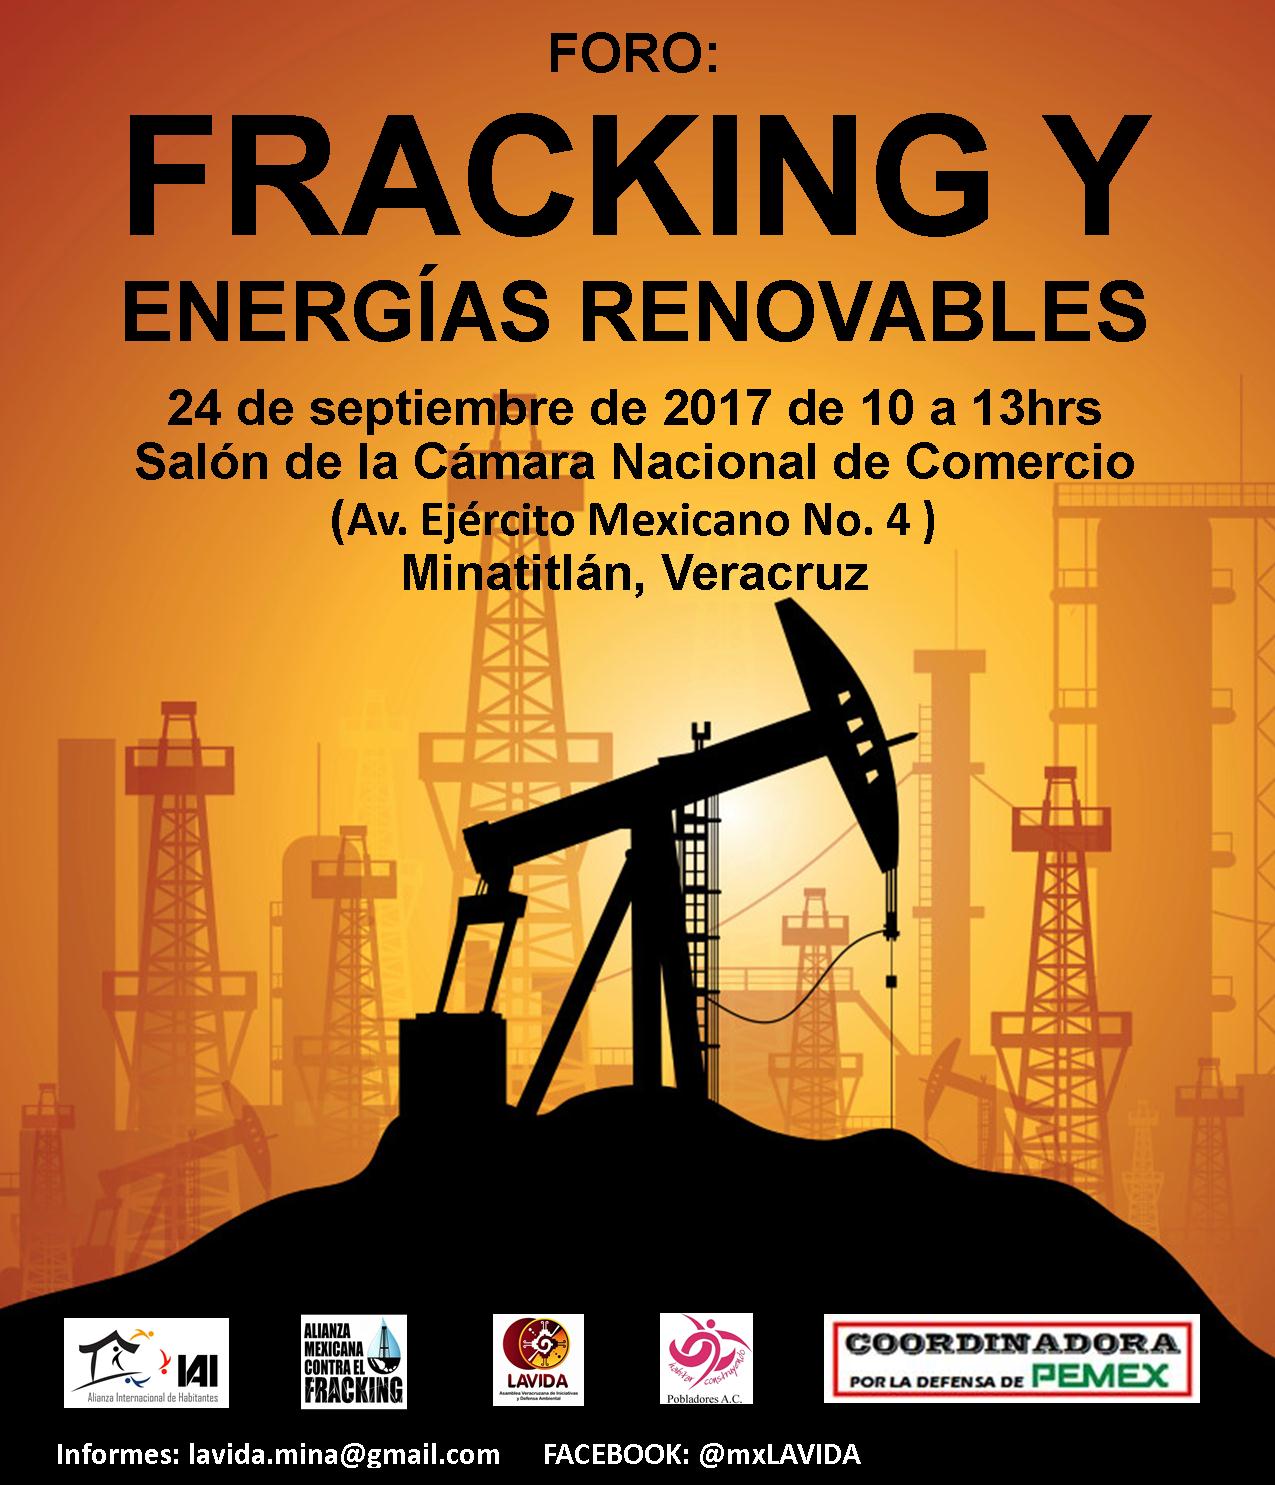 Foro Fracking y Energías Renovables, Minatitlán